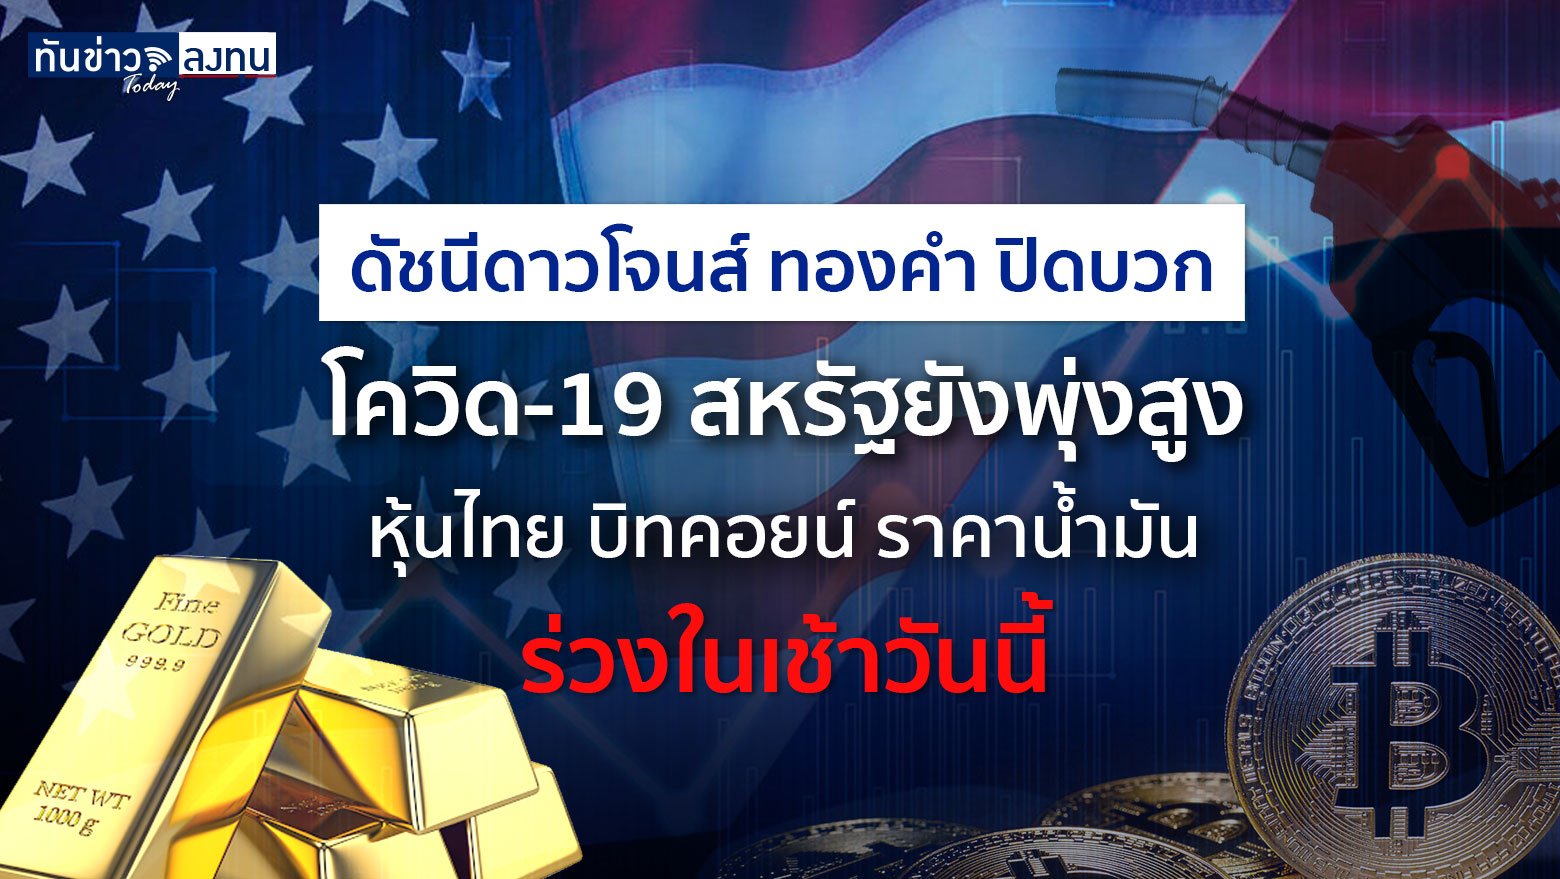 ดัชนีดาวโจนส์ ทองคำ ปิดบวกแม้ ตัวเลขติดโควิด-19 สหรัฐยังพุ่งสูง ในขณะที่หุ้นไทย บิทคอยน์ ราคาน้ำมัน ร่วงในเช้าวันนี้